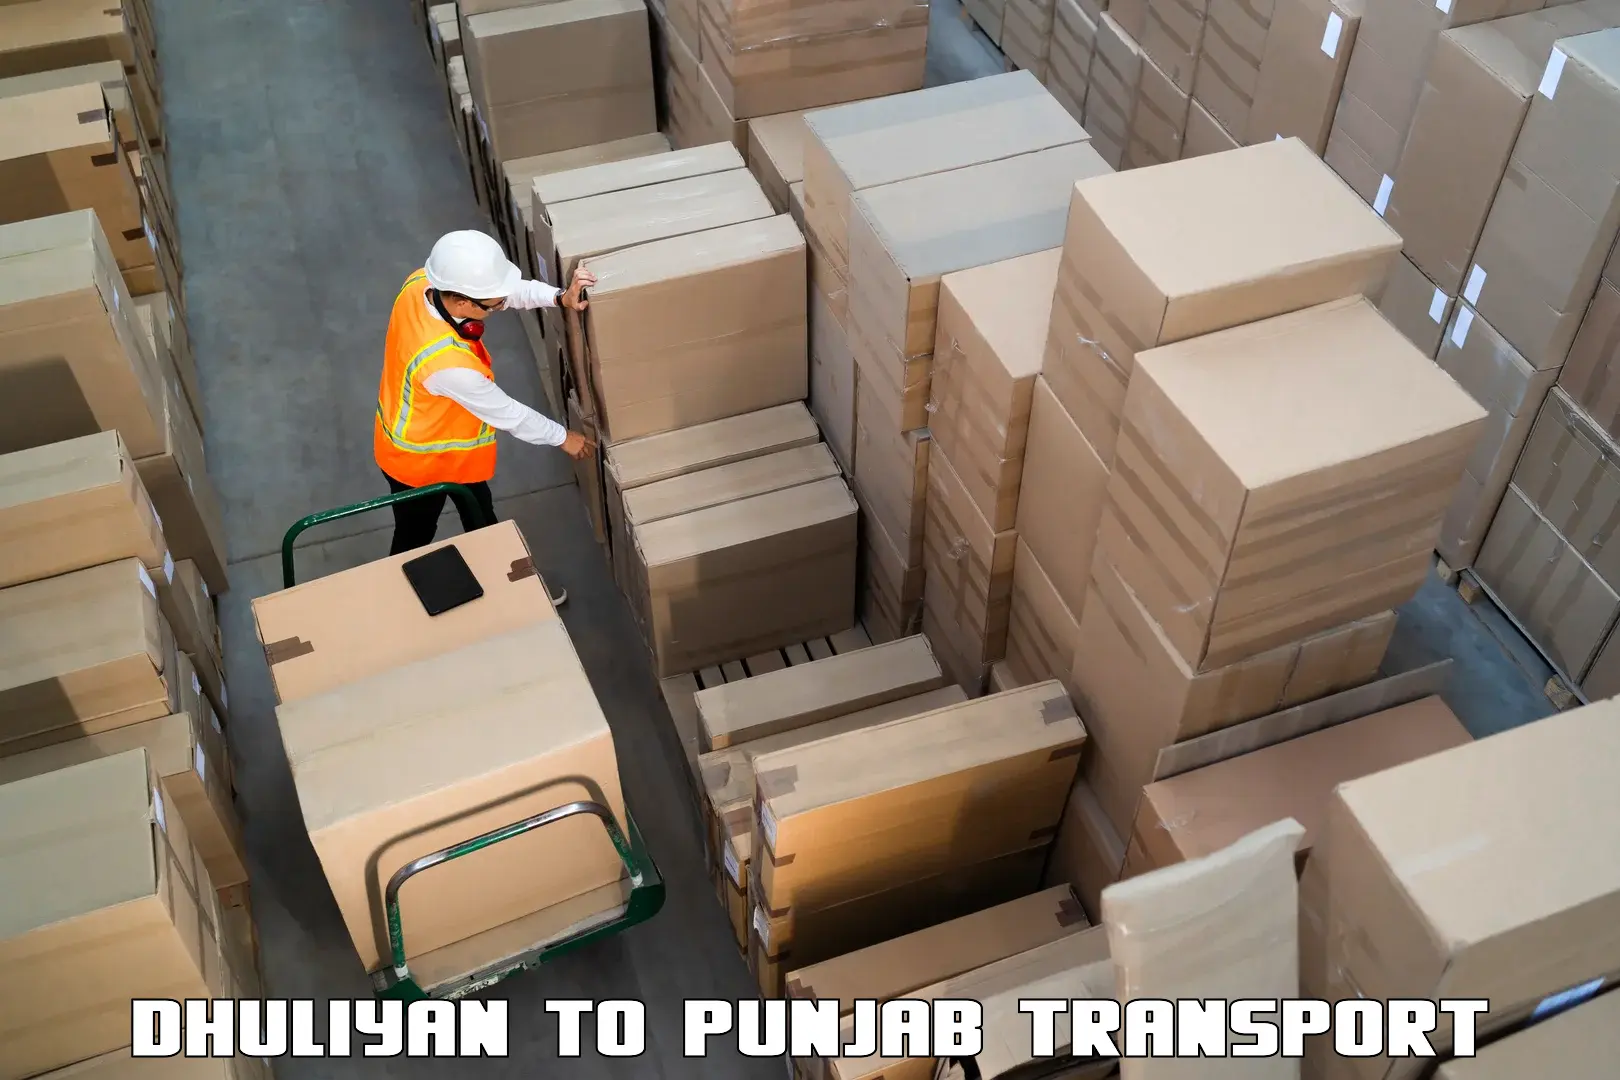 Pick up transport service Dhuliyan to Punjab